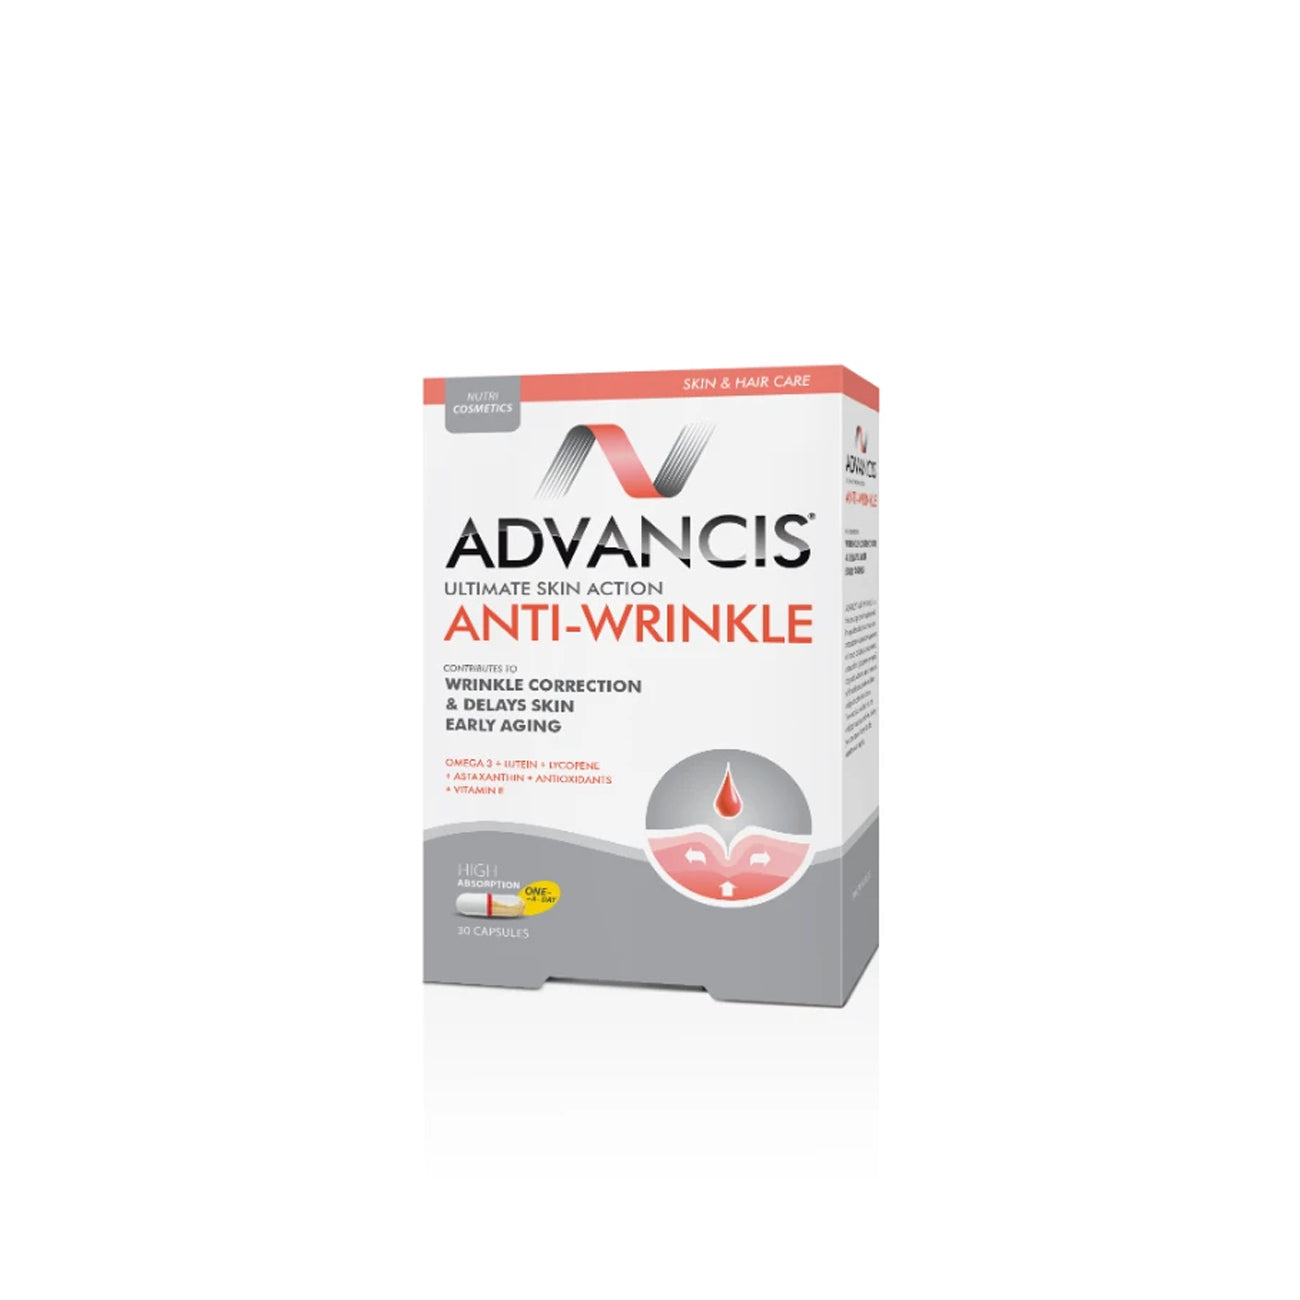 Advancis Anti-Wrinkle